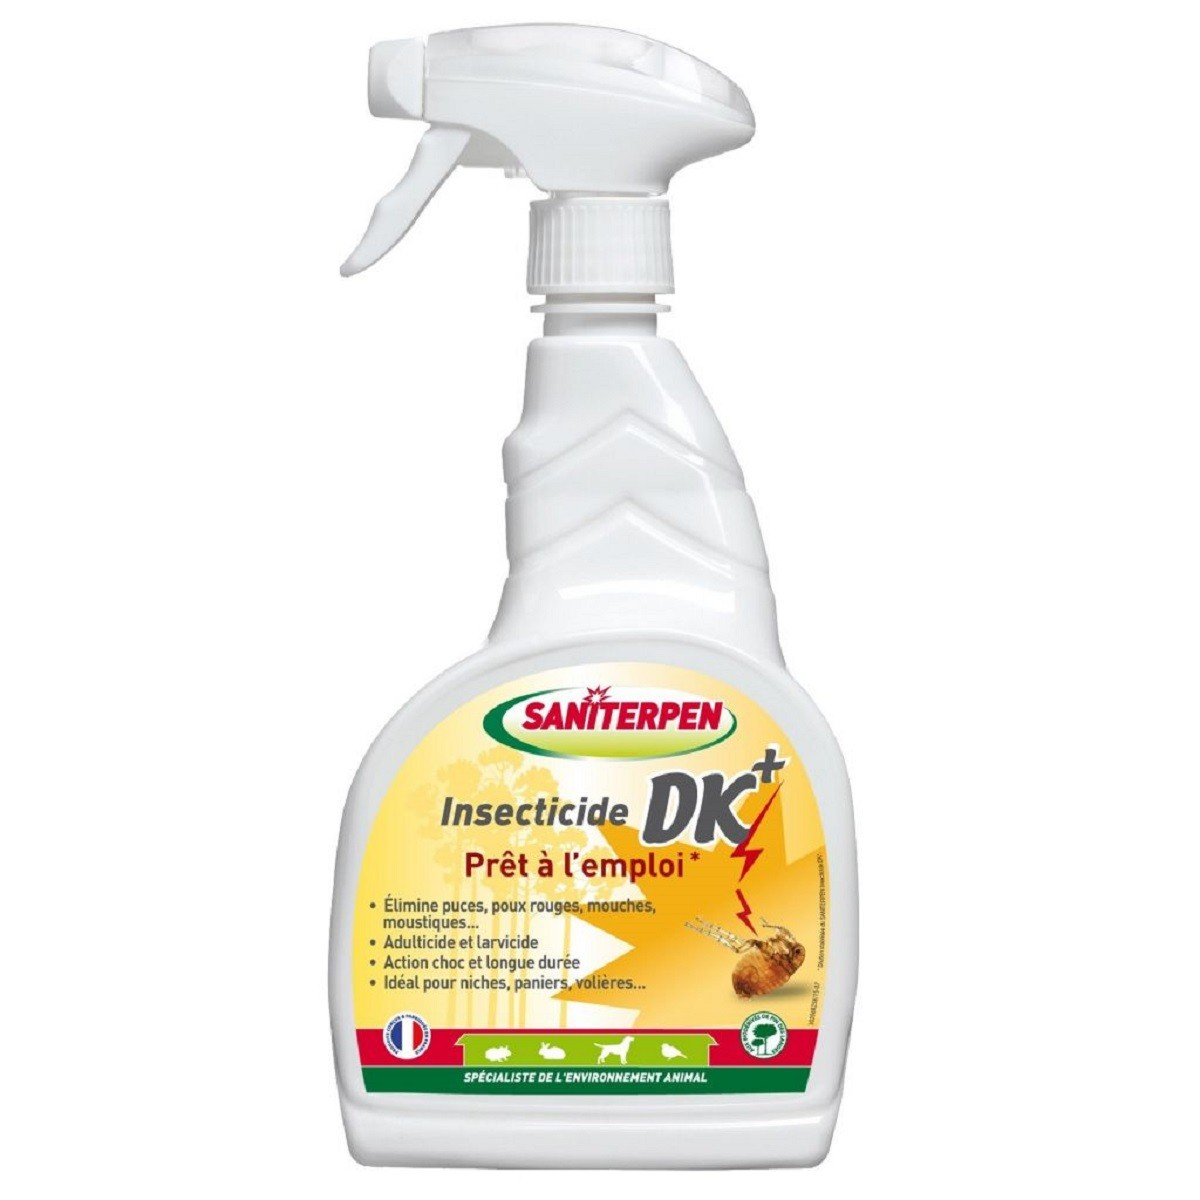 Insektenvernichter DK von Saniterpen - Spray 750ml